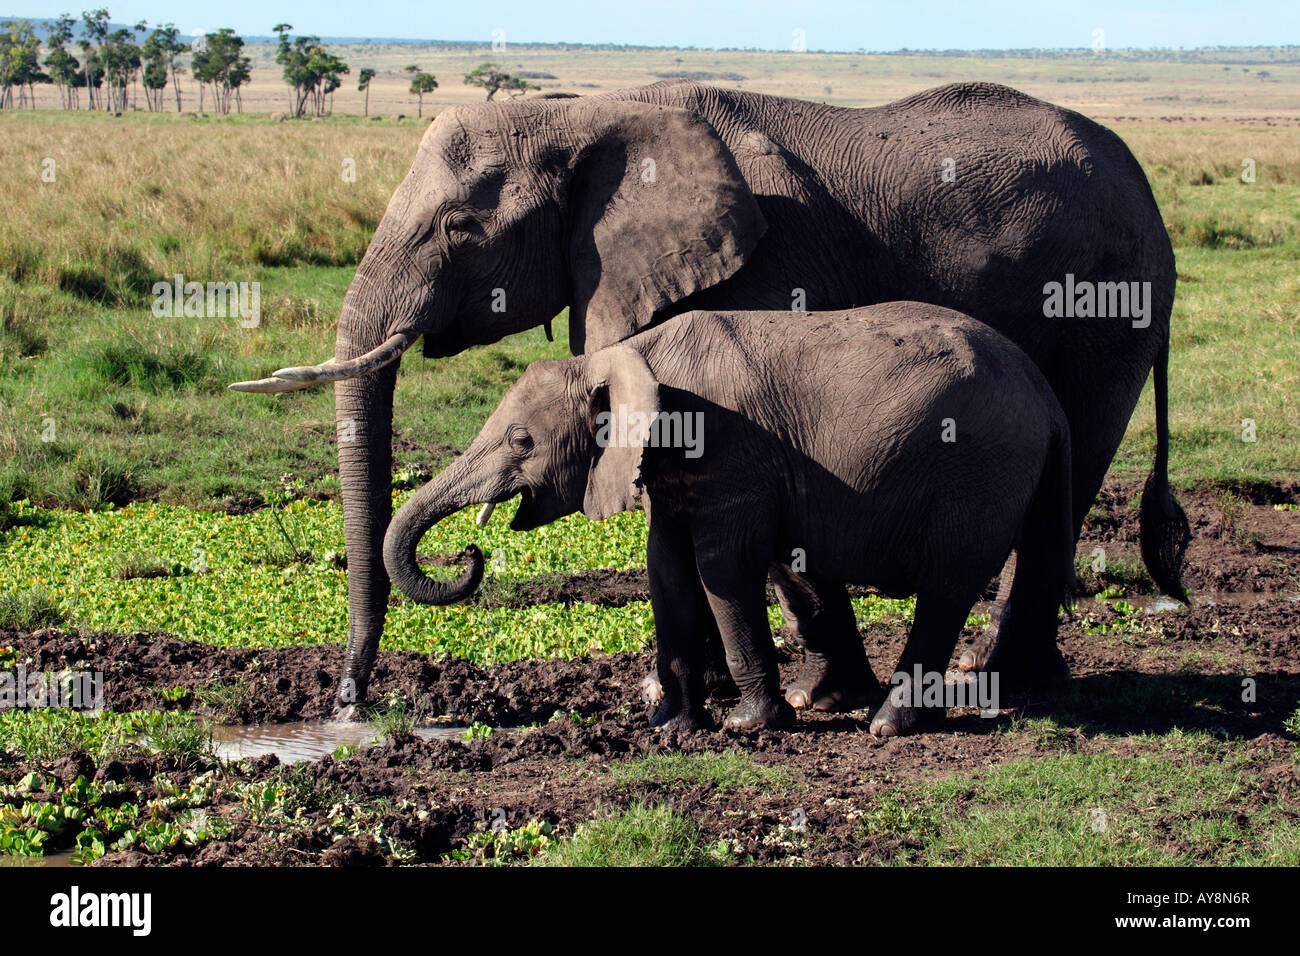 Adult And Young Elephant At Water Hole Drinking, Masai Mara Kenya Stock Photo